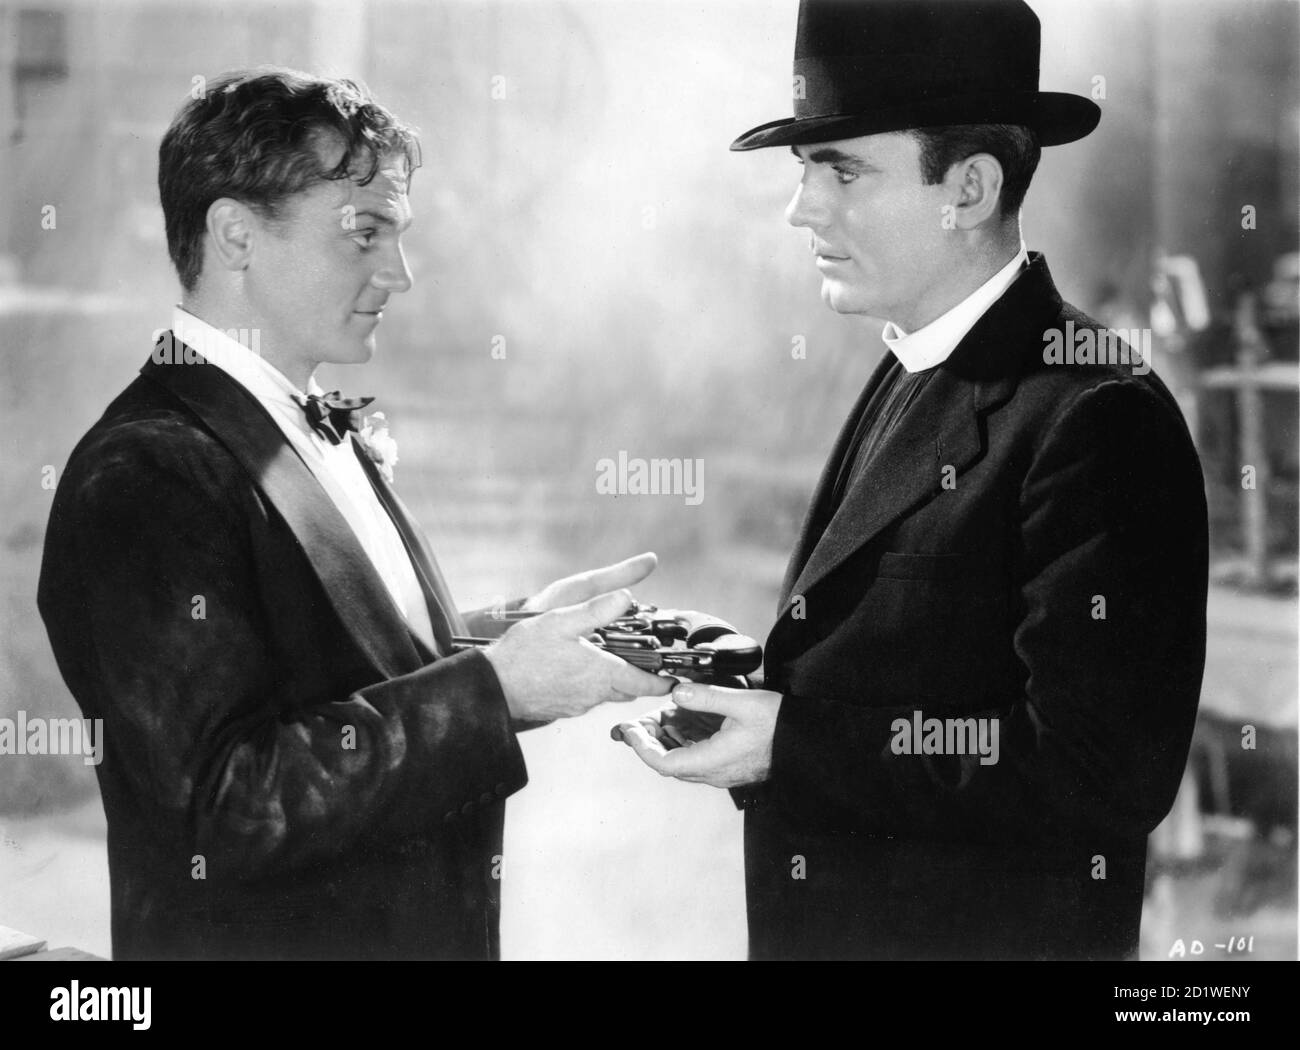 James CAGNEY und PAT O'BRIEN in ENGELN MIT SCHMUTZIGEN GESICHTERN 1938 Regisseur MICHAEL CURTIZ Warner Bros Stockfoto